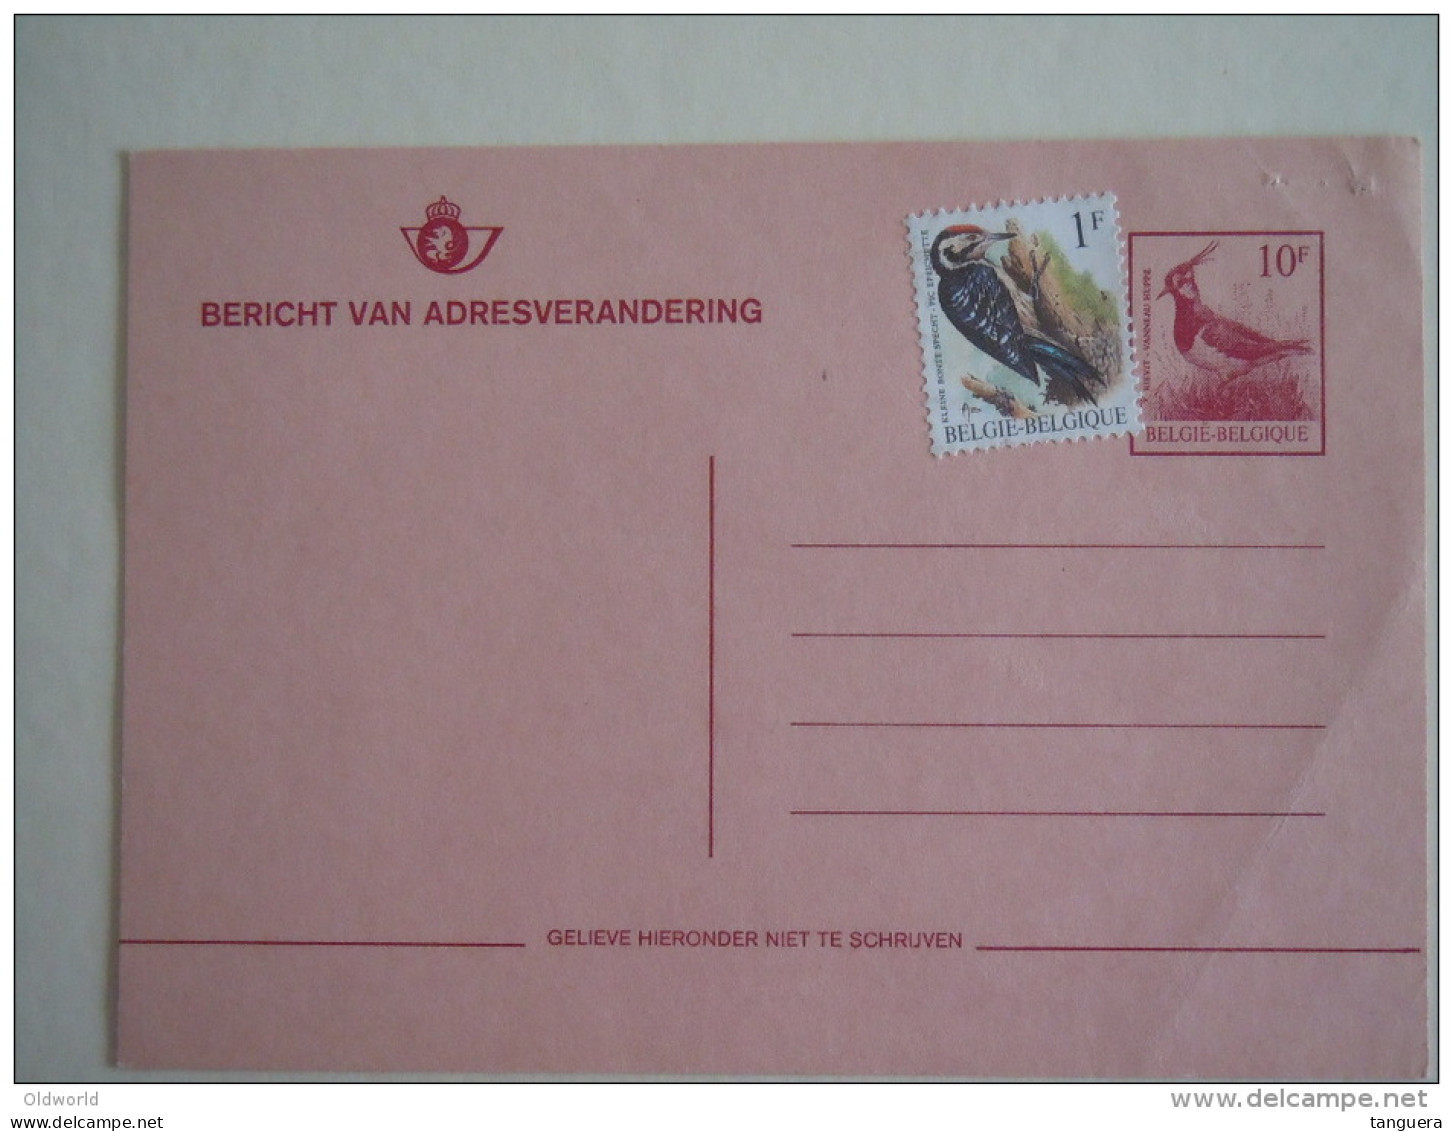 België Briefkaart Belgique 1990-1994 Entier Adresverandering Changement D'adresse 10F Used SBEP 27.i N - Addr. Chang.